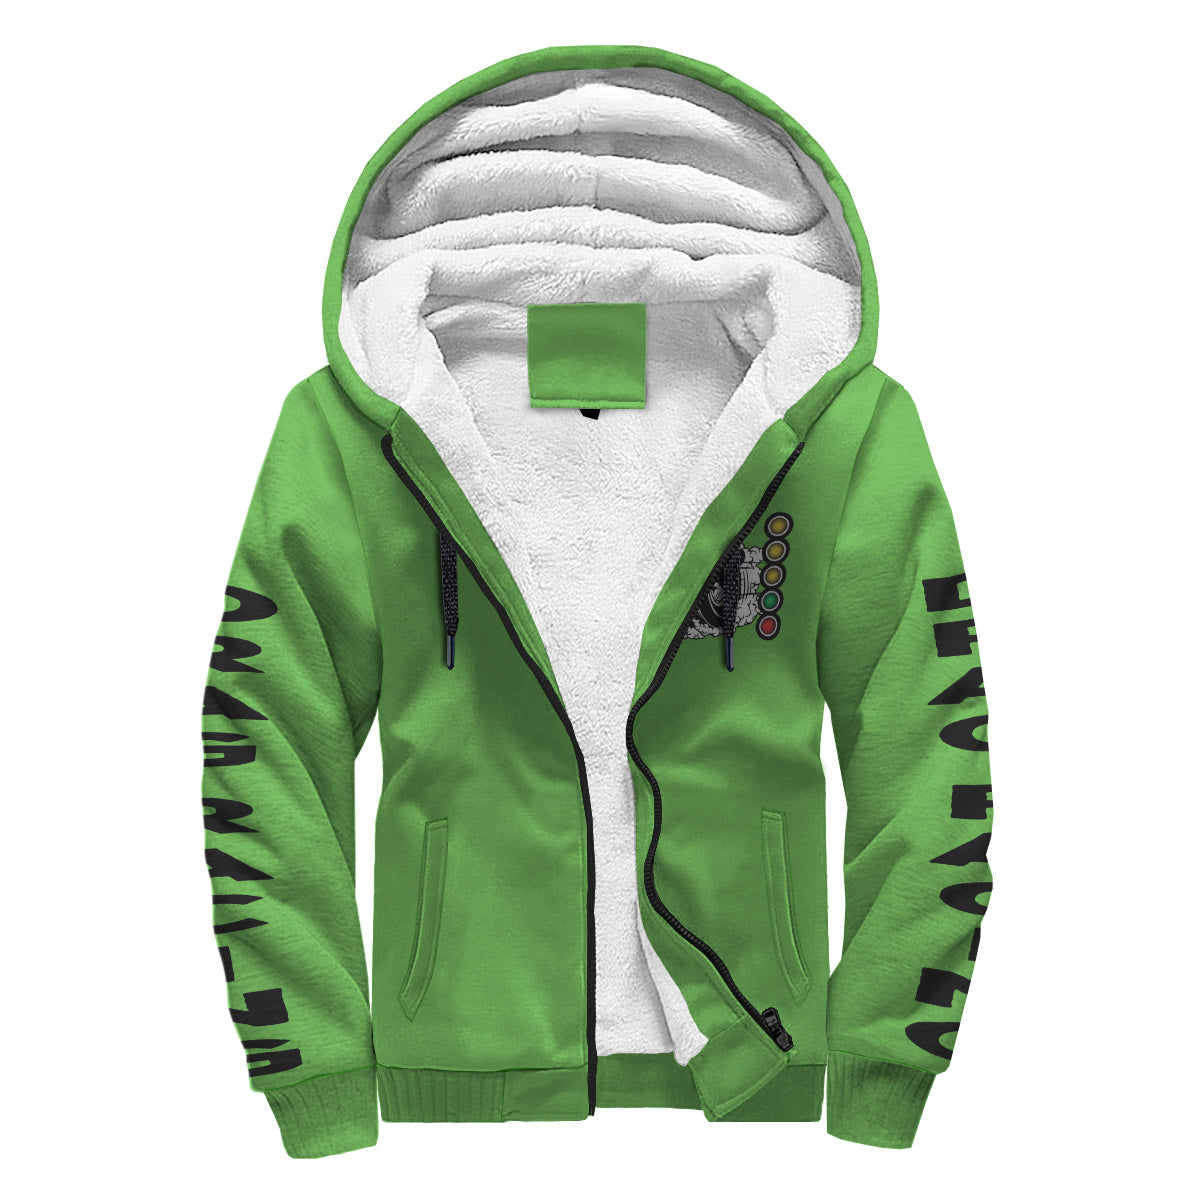 Drag Racing Sherpa Jacket Green